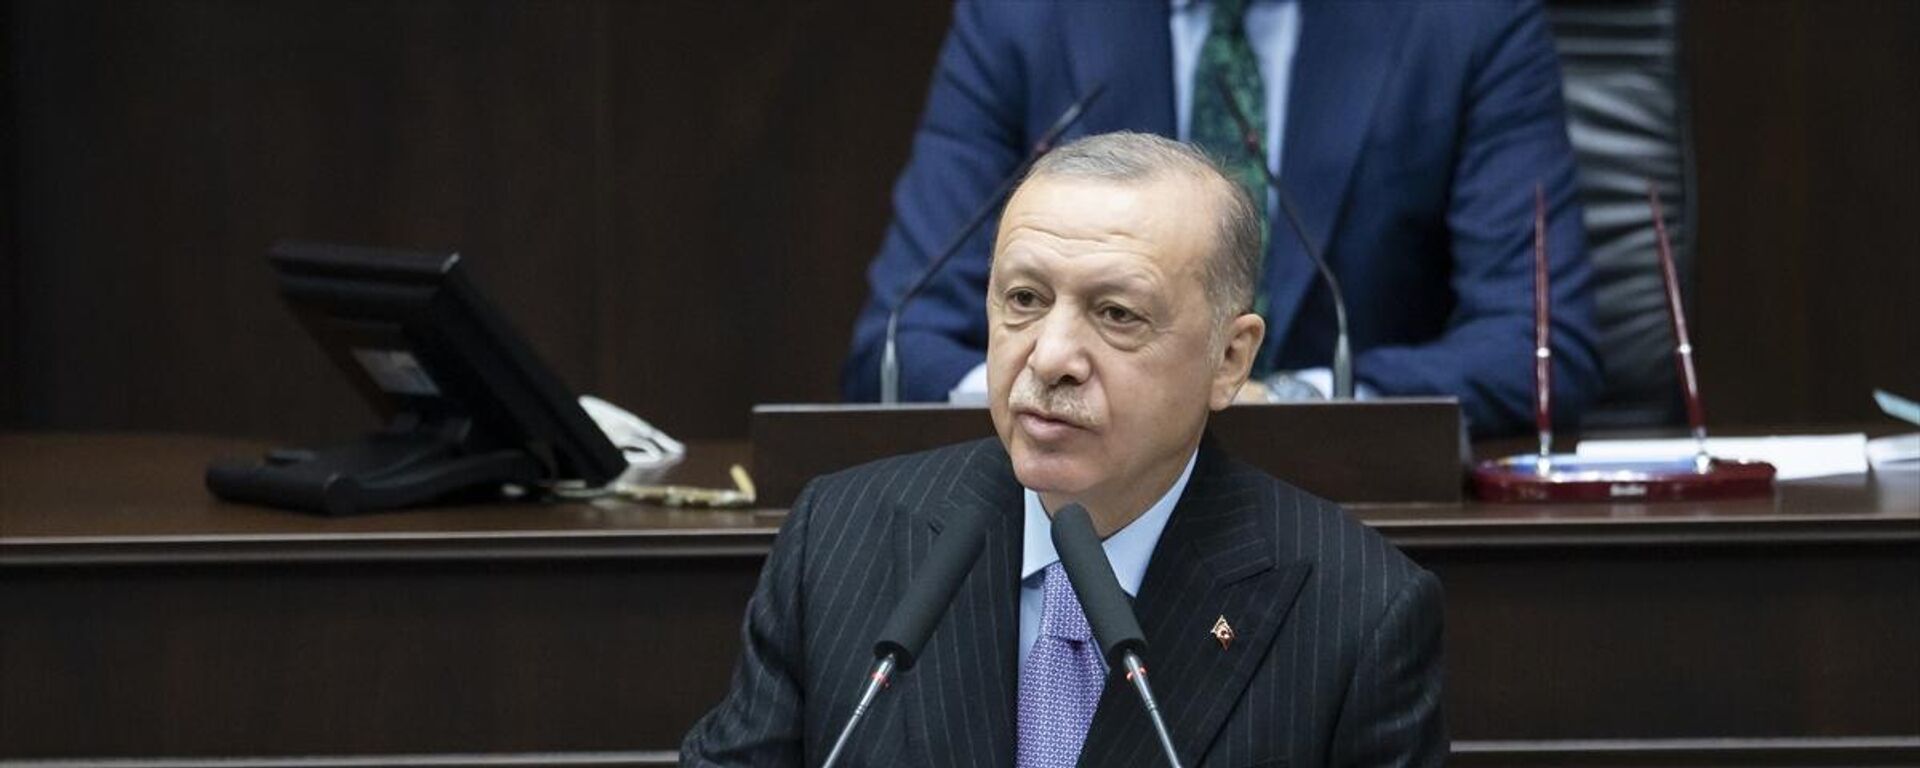 Cumhurbaşkanı Recep Tayyip Erdoğan, partisinin grup toplantısında konuştu - Sputnik Türkiye, 1920, 17.11.2021